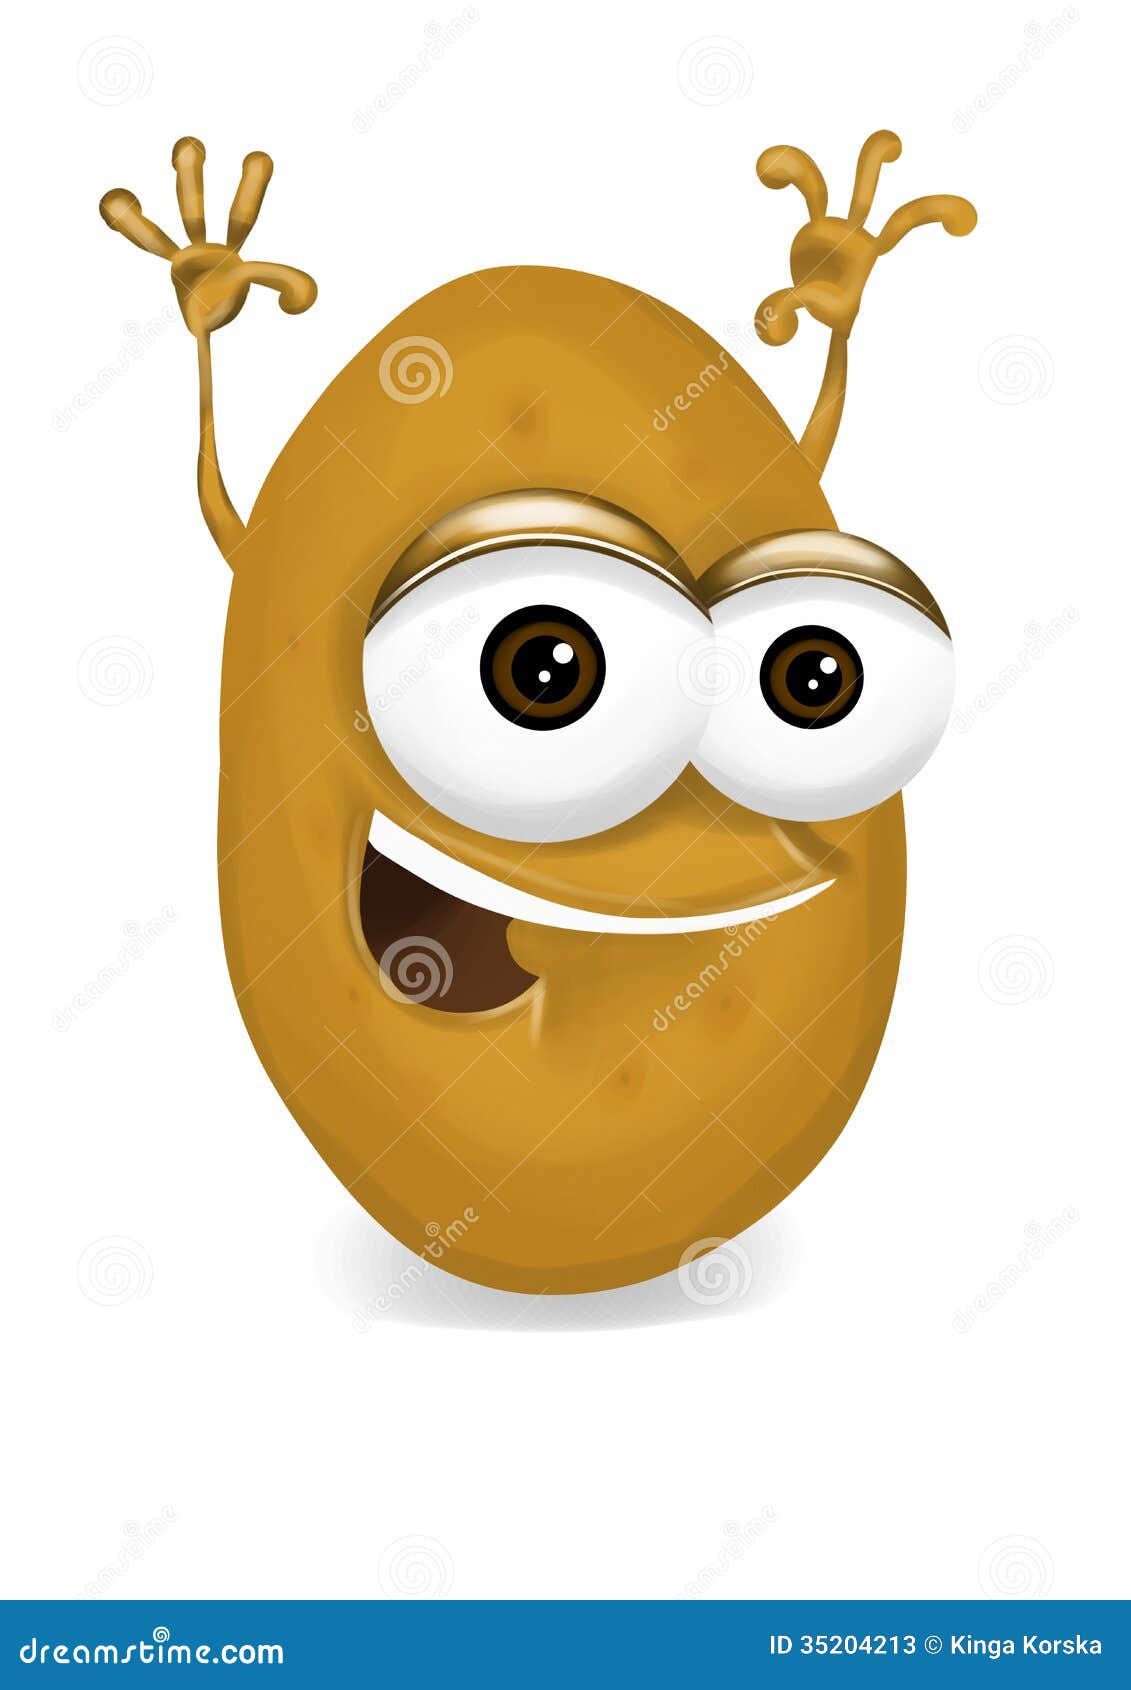 personaje de dibujos animados feliz de la patata que ríe con los brazos